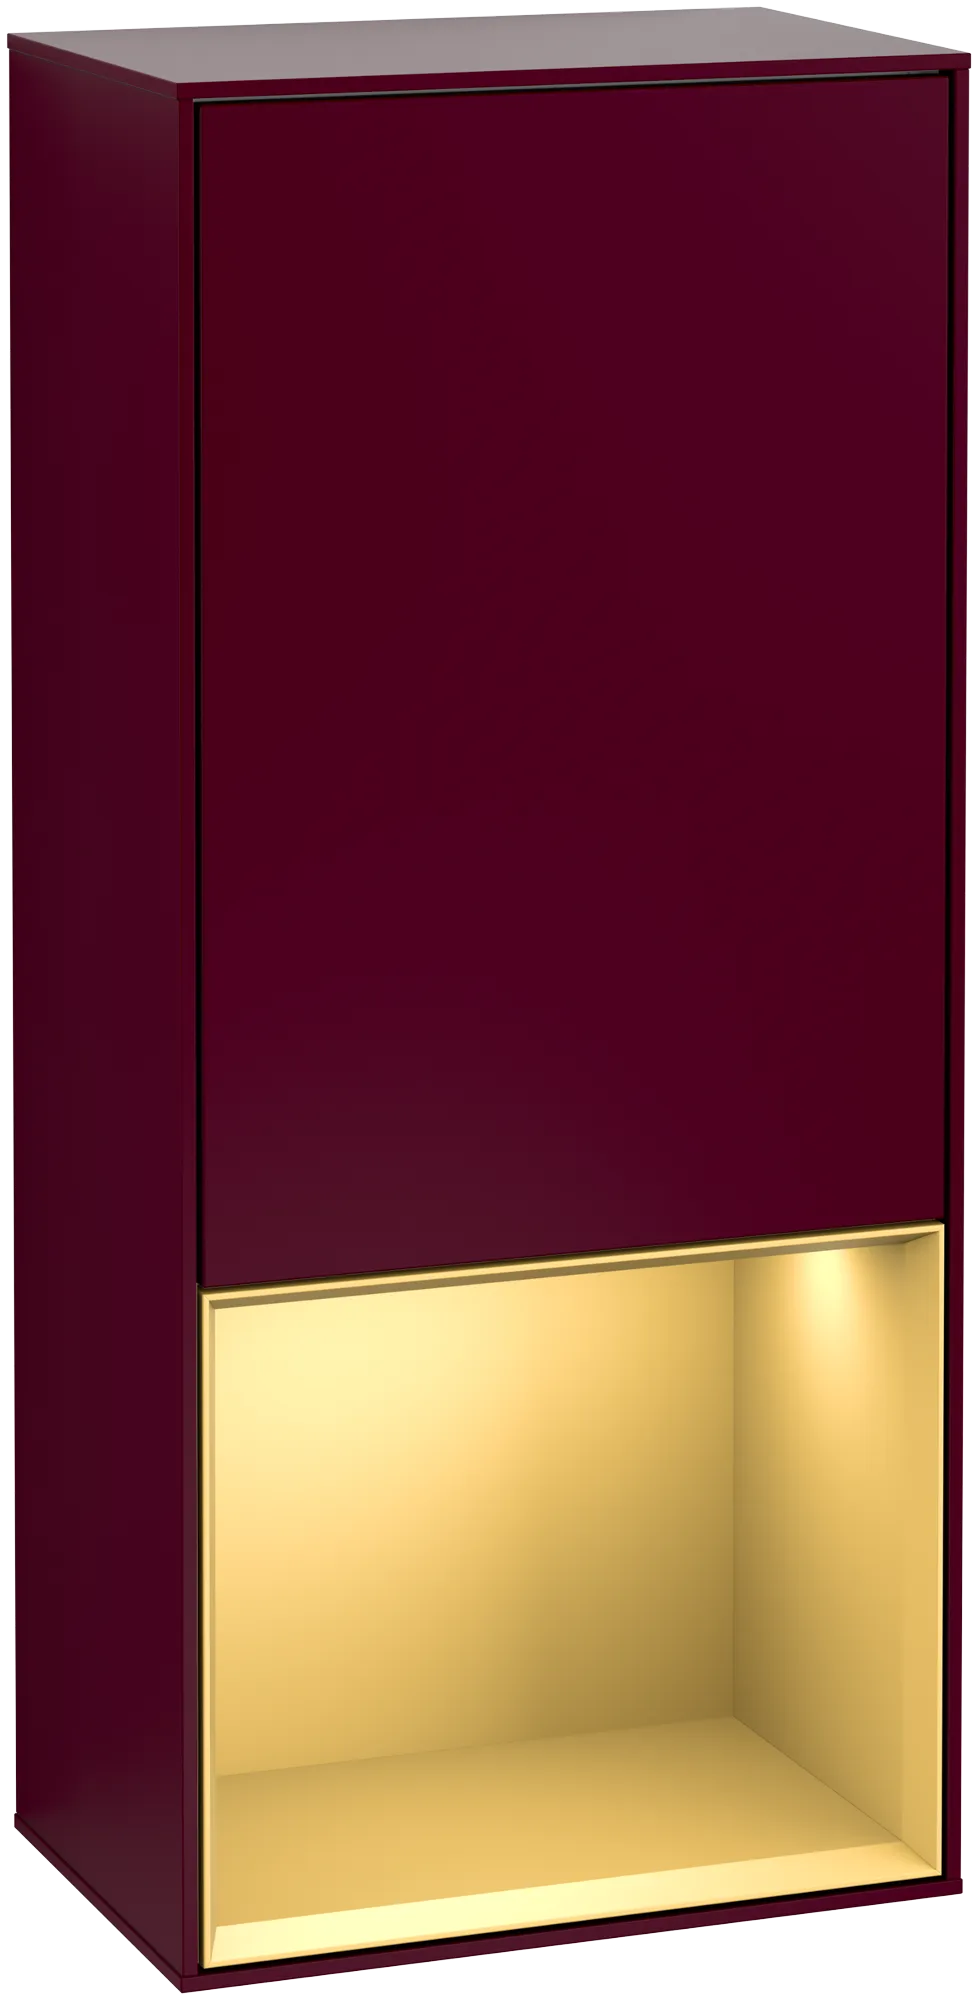 Bild von VILLEROY BOCH Finion Seitenschrank, mit Beleuchtung, 1 Tür, 418 x 936 x 270 mm, Peony Matt Lacquer / Gold Matt Lacquer #G550HFHB